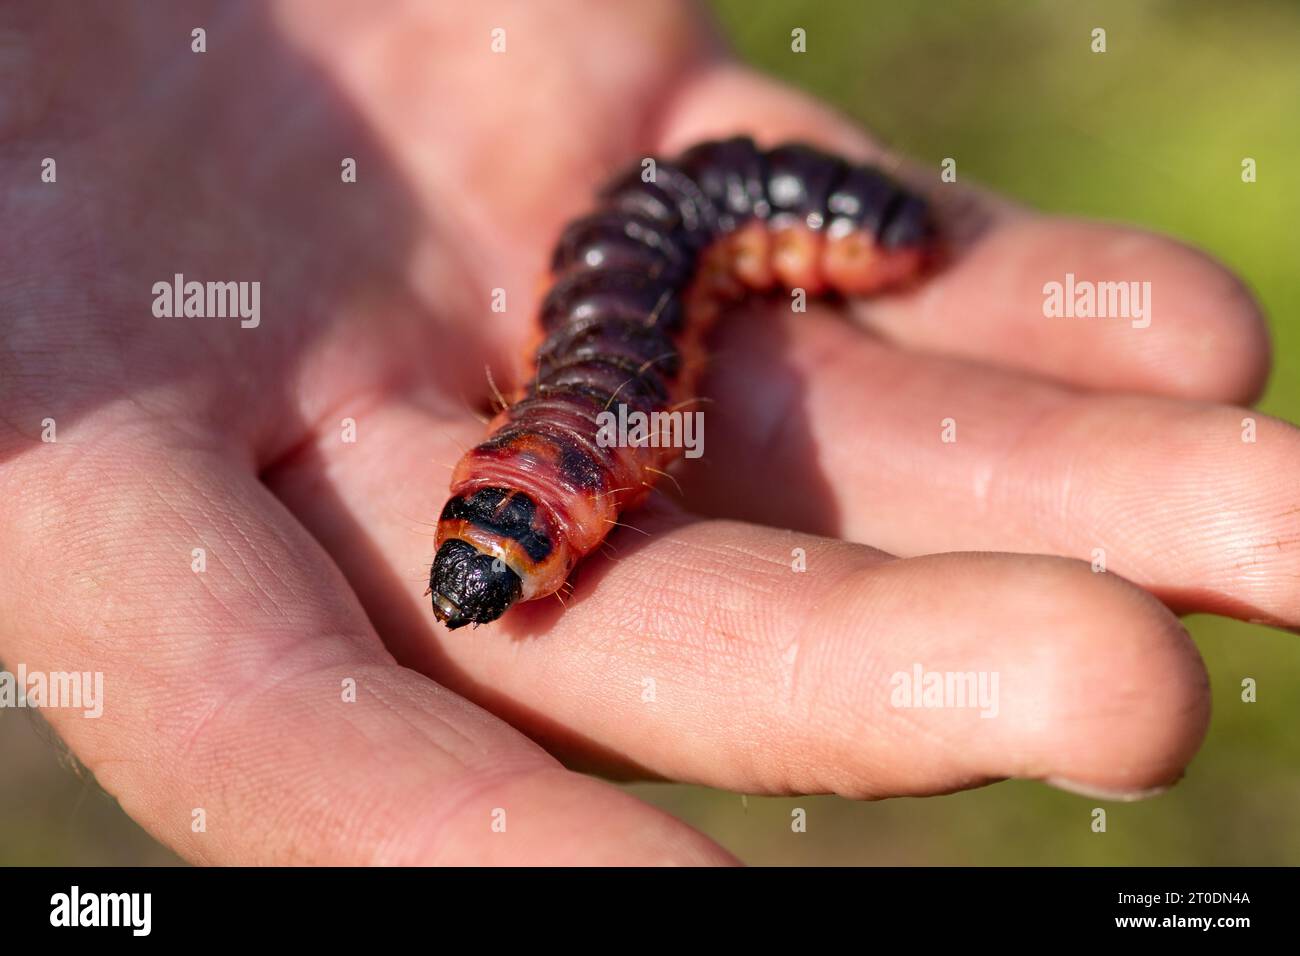 Bellissimo caterpillar arancione e nero in mano, primo piano Foto Stock